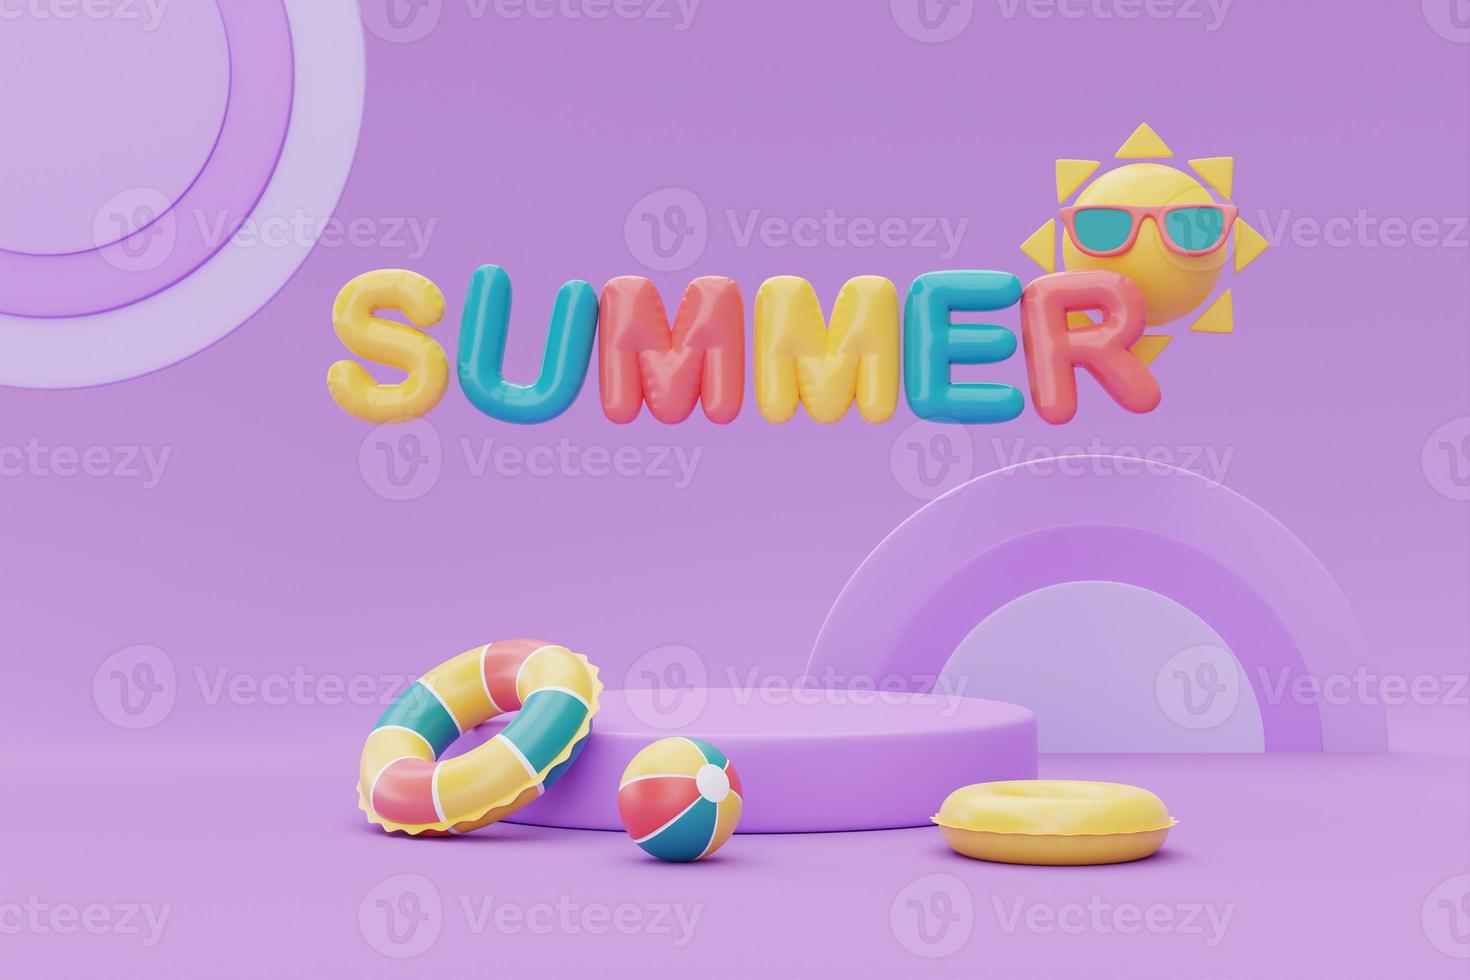 sommardisplay med färgglada sommarstrandelement på lila bakgrund, 3D-rendering. foto